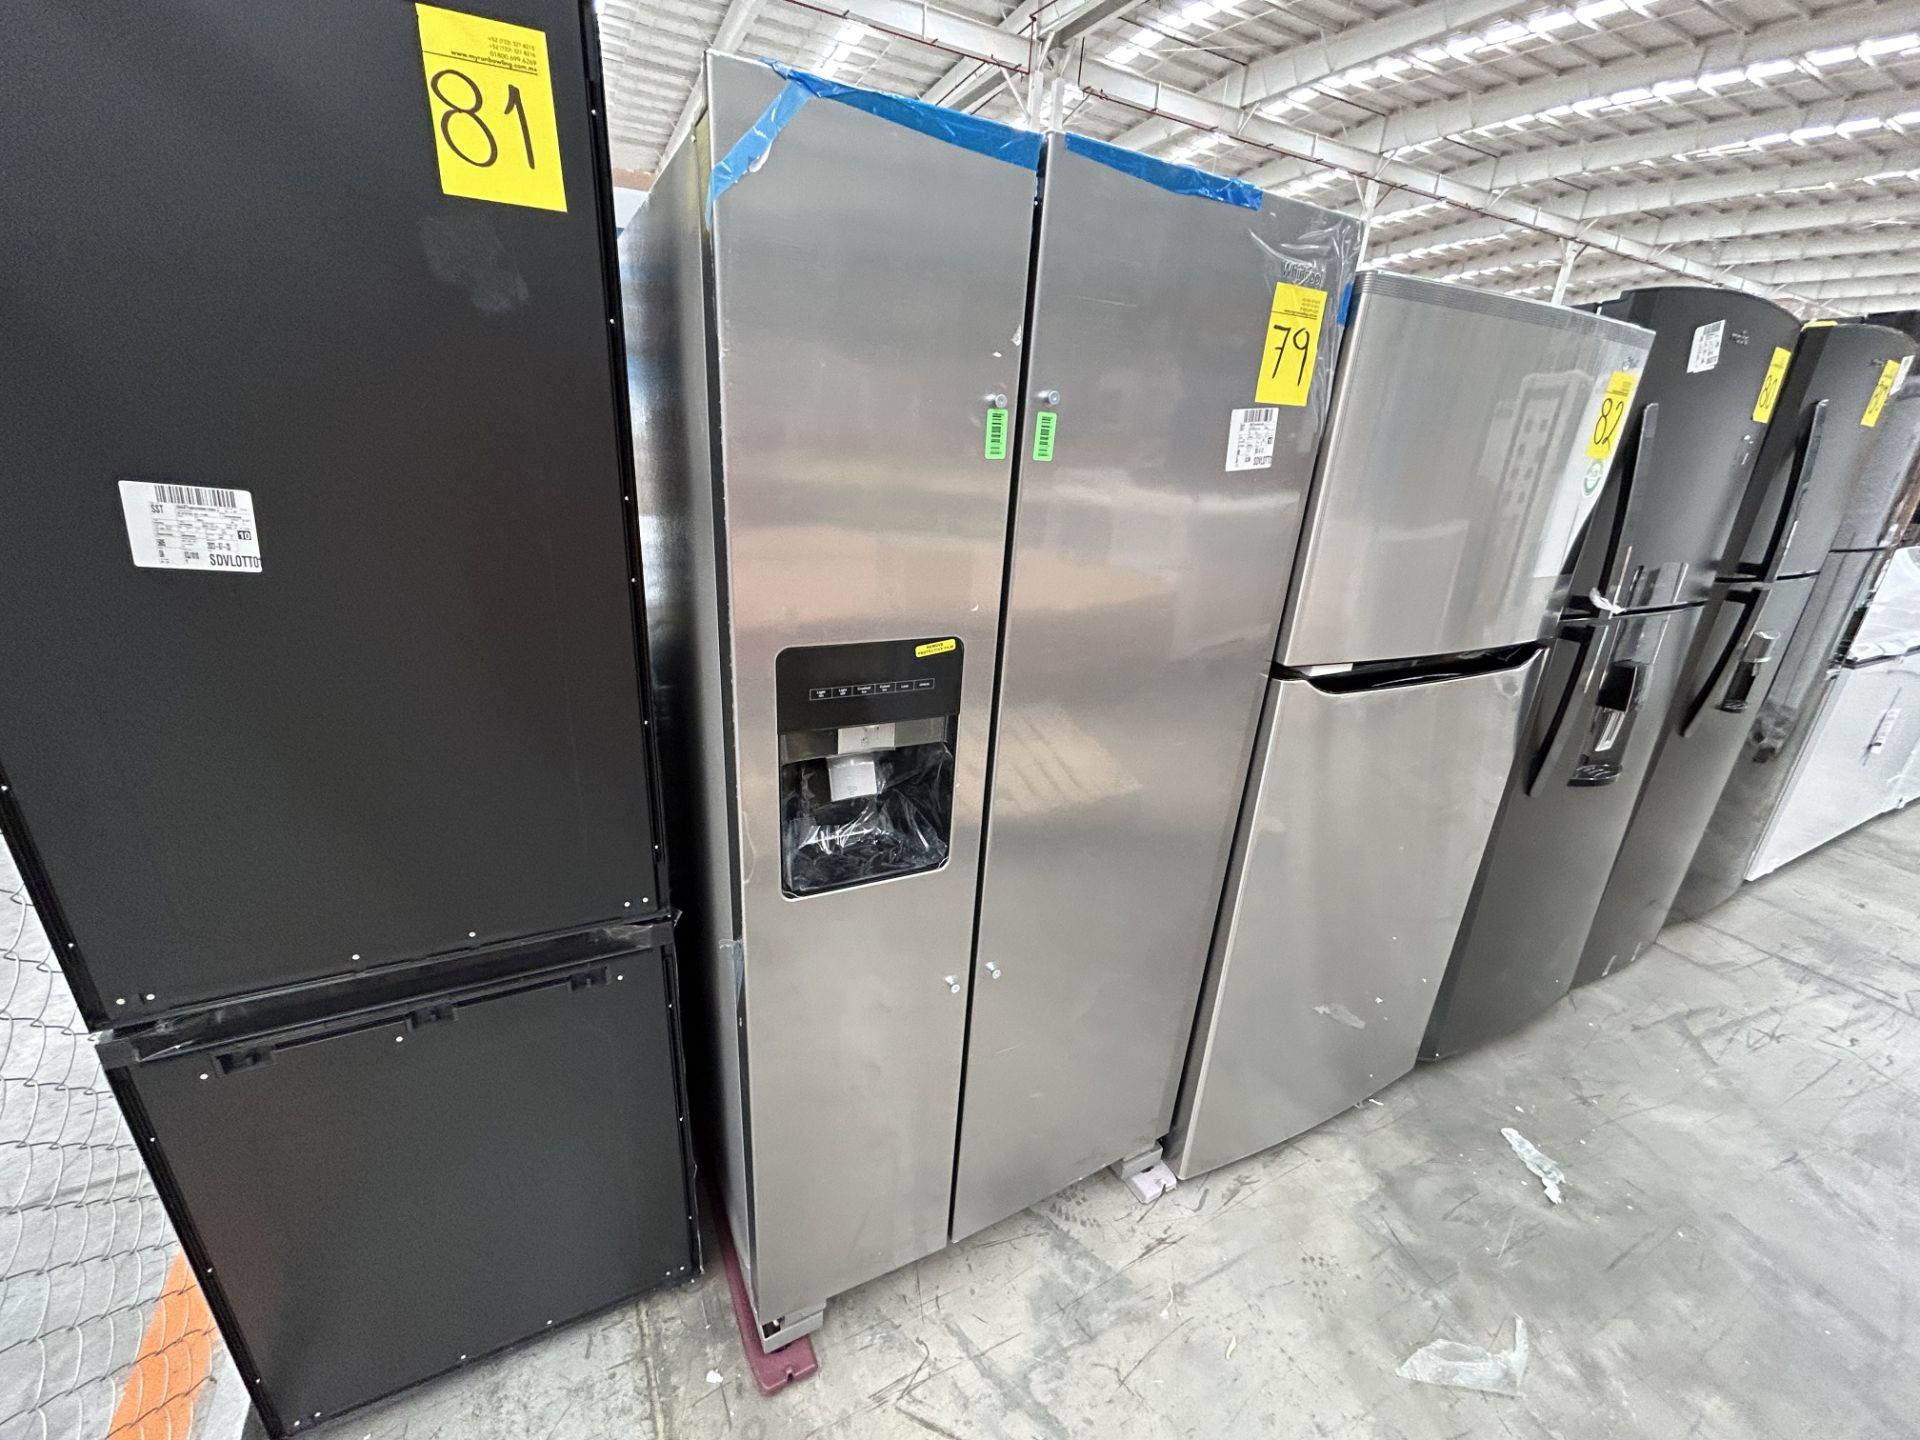 Lote de 1 Refrigerador con dispensador de agua Marca WHIRPOOL, Modelo WD2620S, Serie 704856, Color - Image 3 of 5